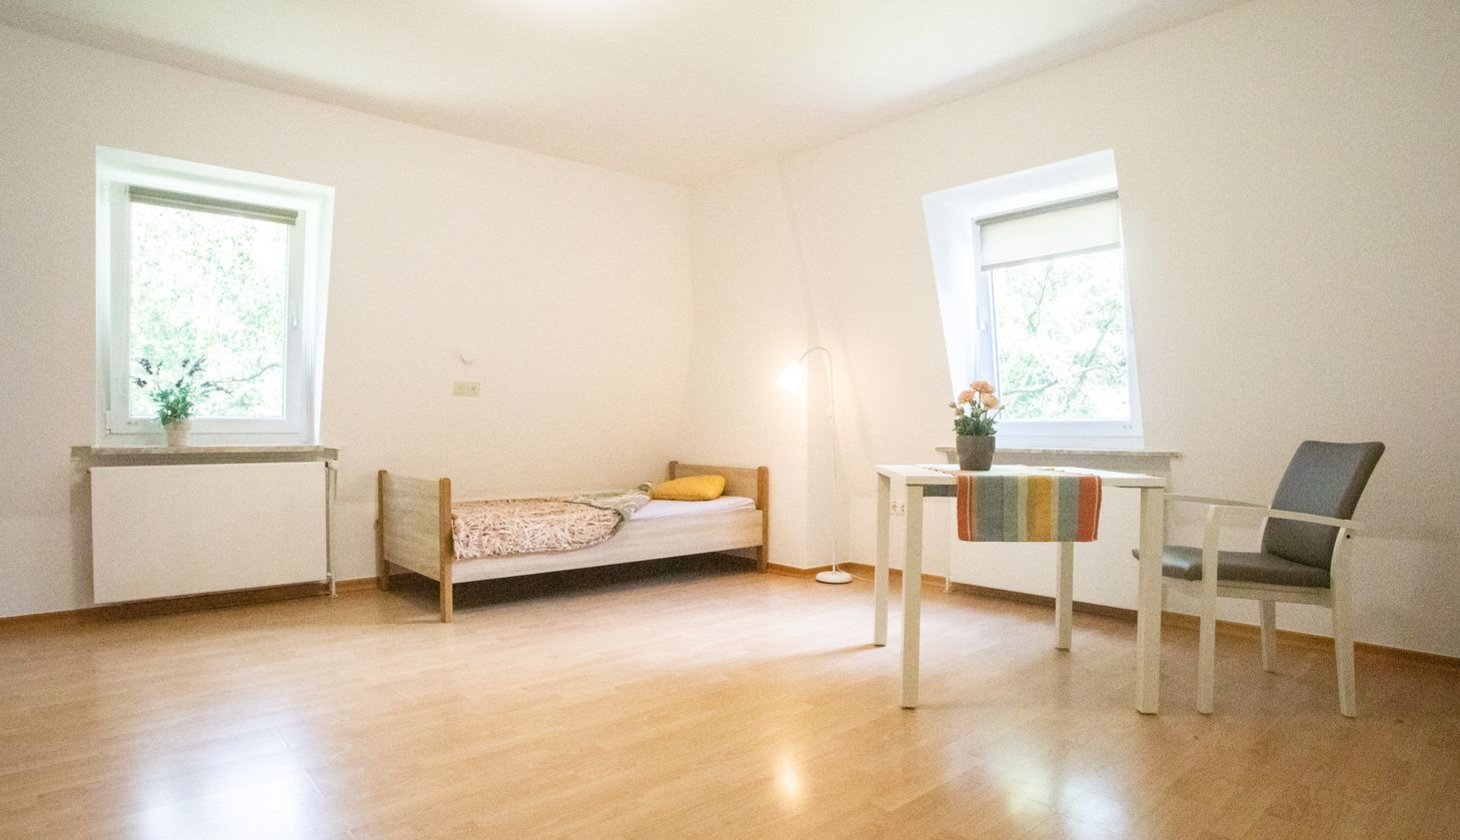 Ein lichtdurchflutetes Zimmer mit Bett, Tisch, Stuhl und zwei Fenstern im Haus Eckel, einer Einrichtung des Sozialkontors für Menschen mit geistigen Einschränkungen.